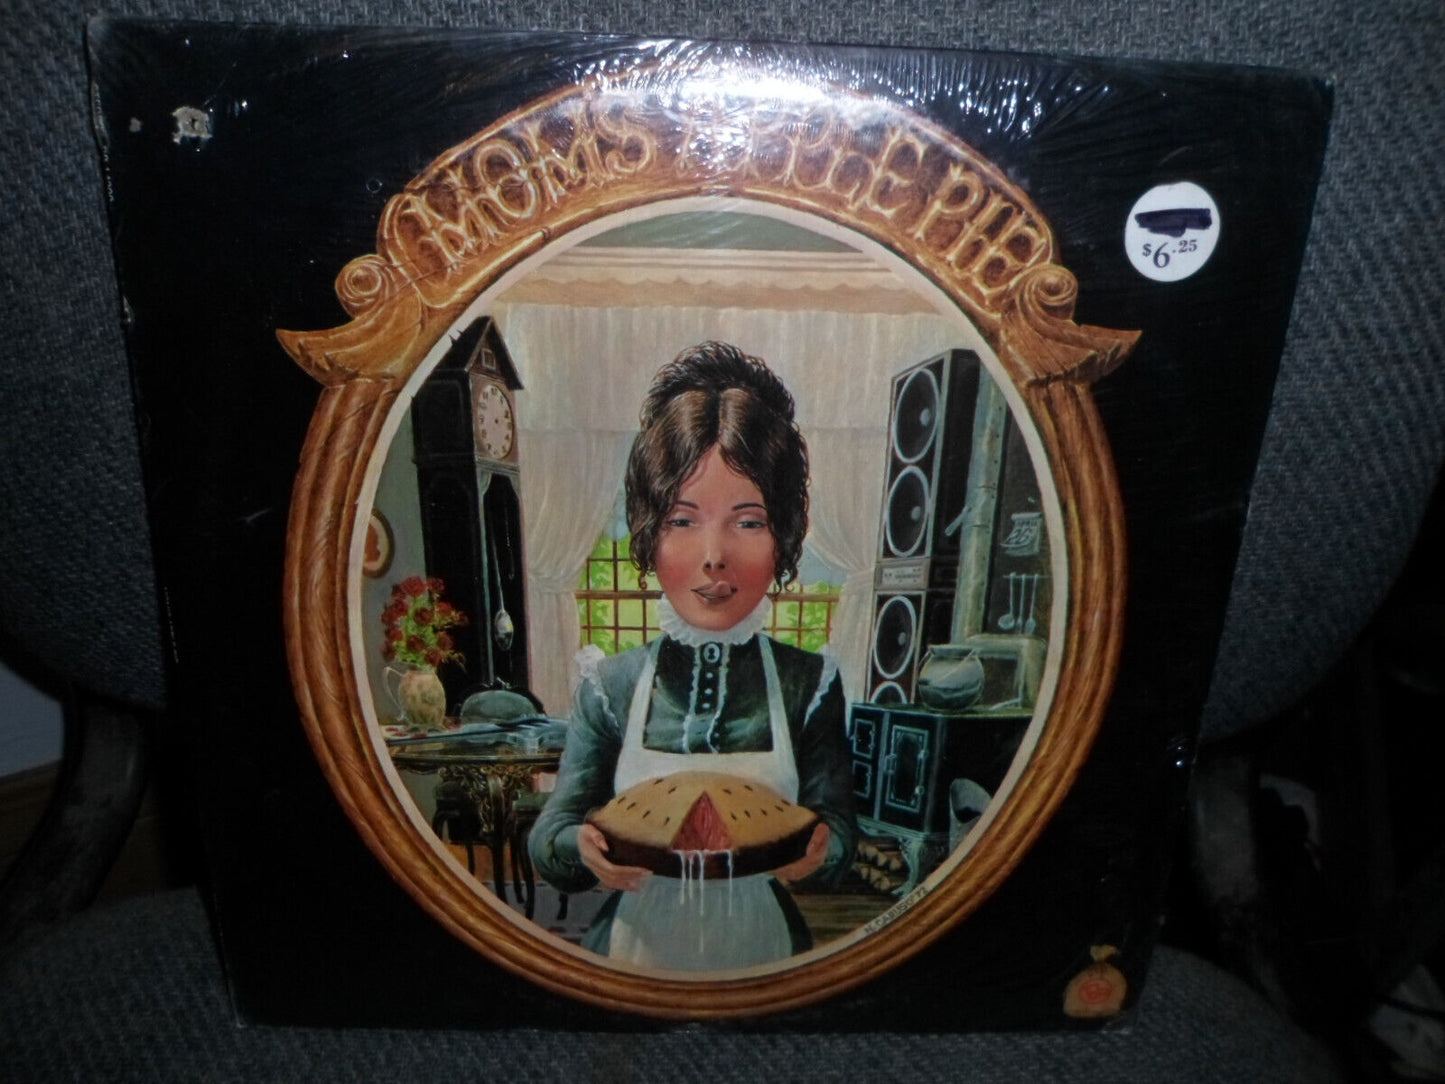 MOMS APPLE PIE s/t LP (1972) Original  *SEALED* w/original recalled cover